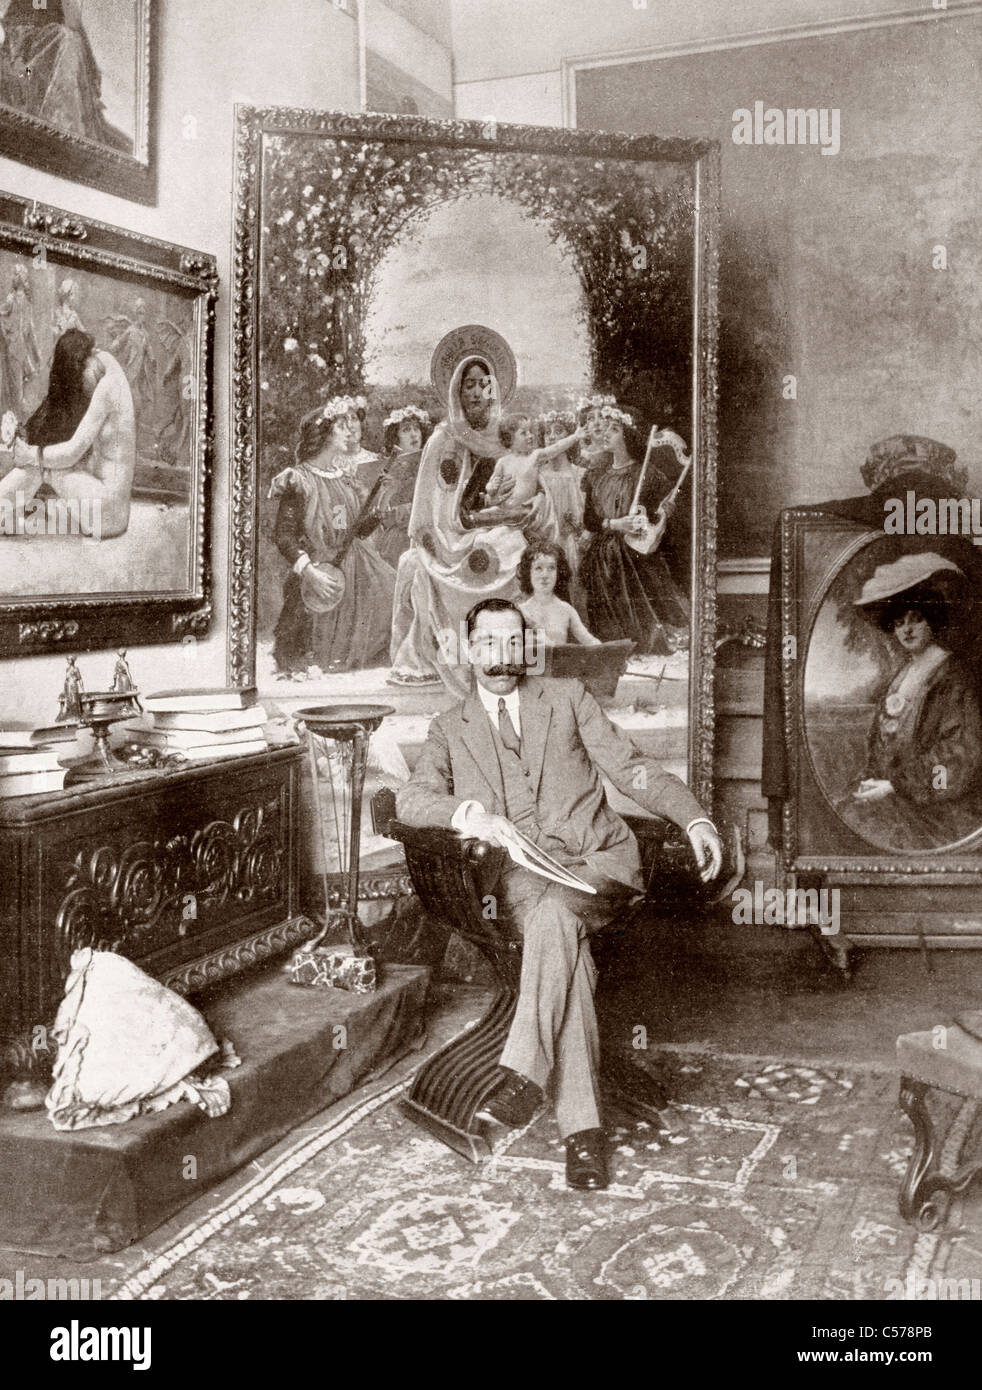 Pedro Sáenz Sáenz, 1863 - 1927. La Fraternité préraphaélite, peintre espagnol ici vu dans son studio de Malaga. Banque D'Images